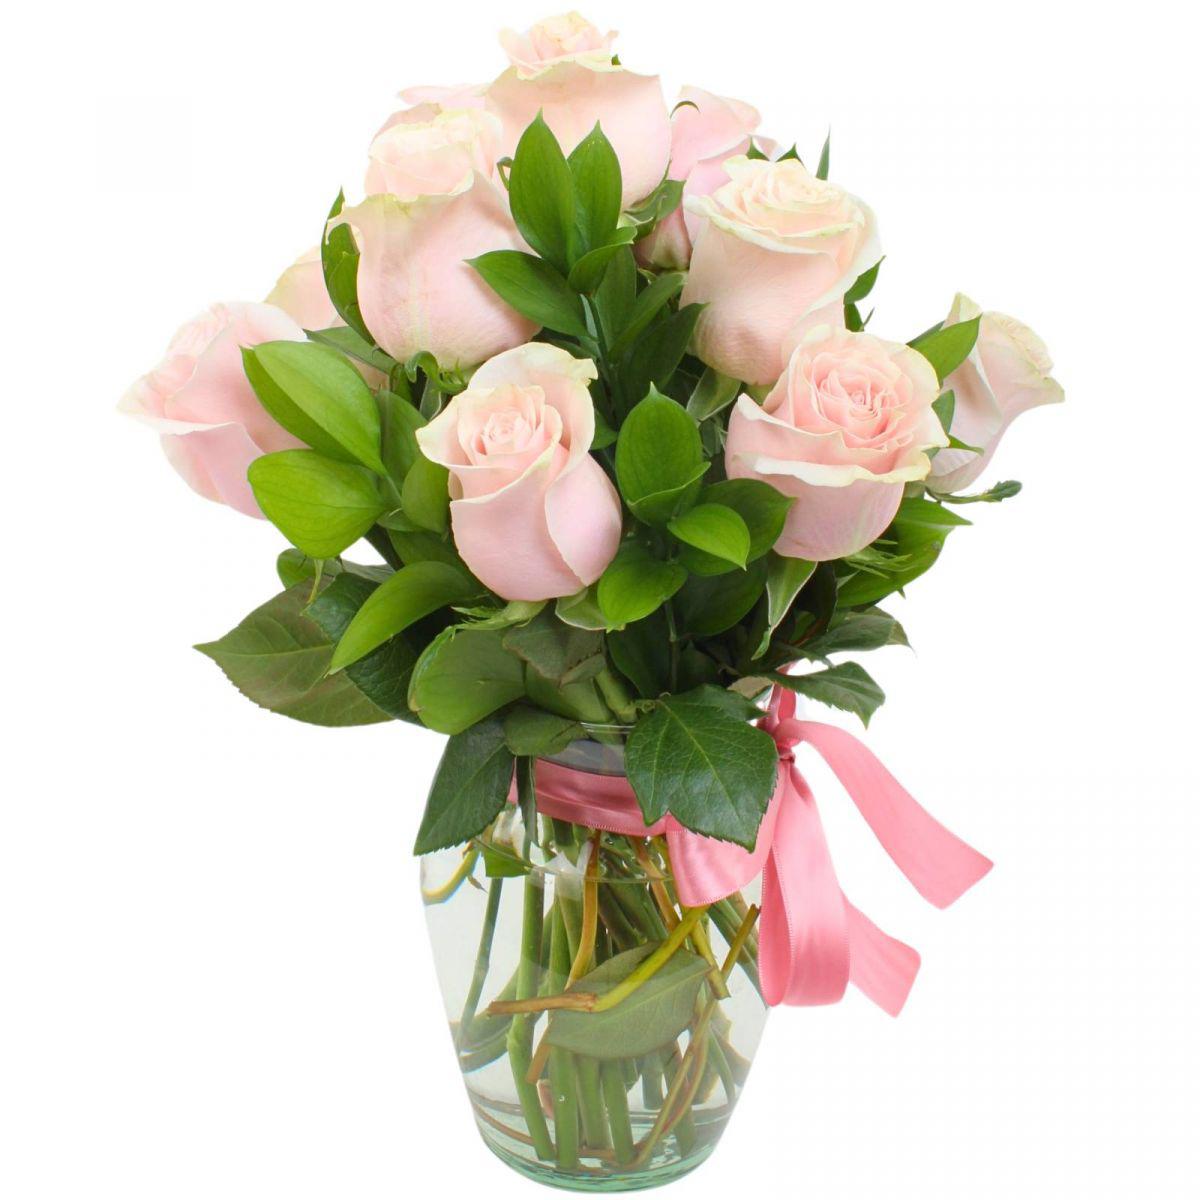 Pequeño Amparo - Florero de vidrio tipo ánfora con 12 rosas color rosado